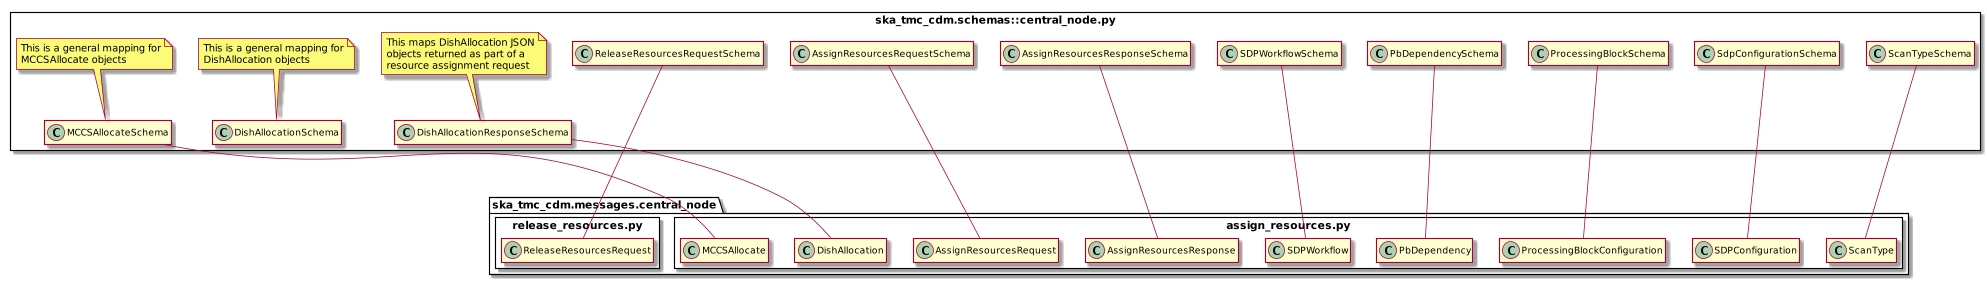 CentralNode schema